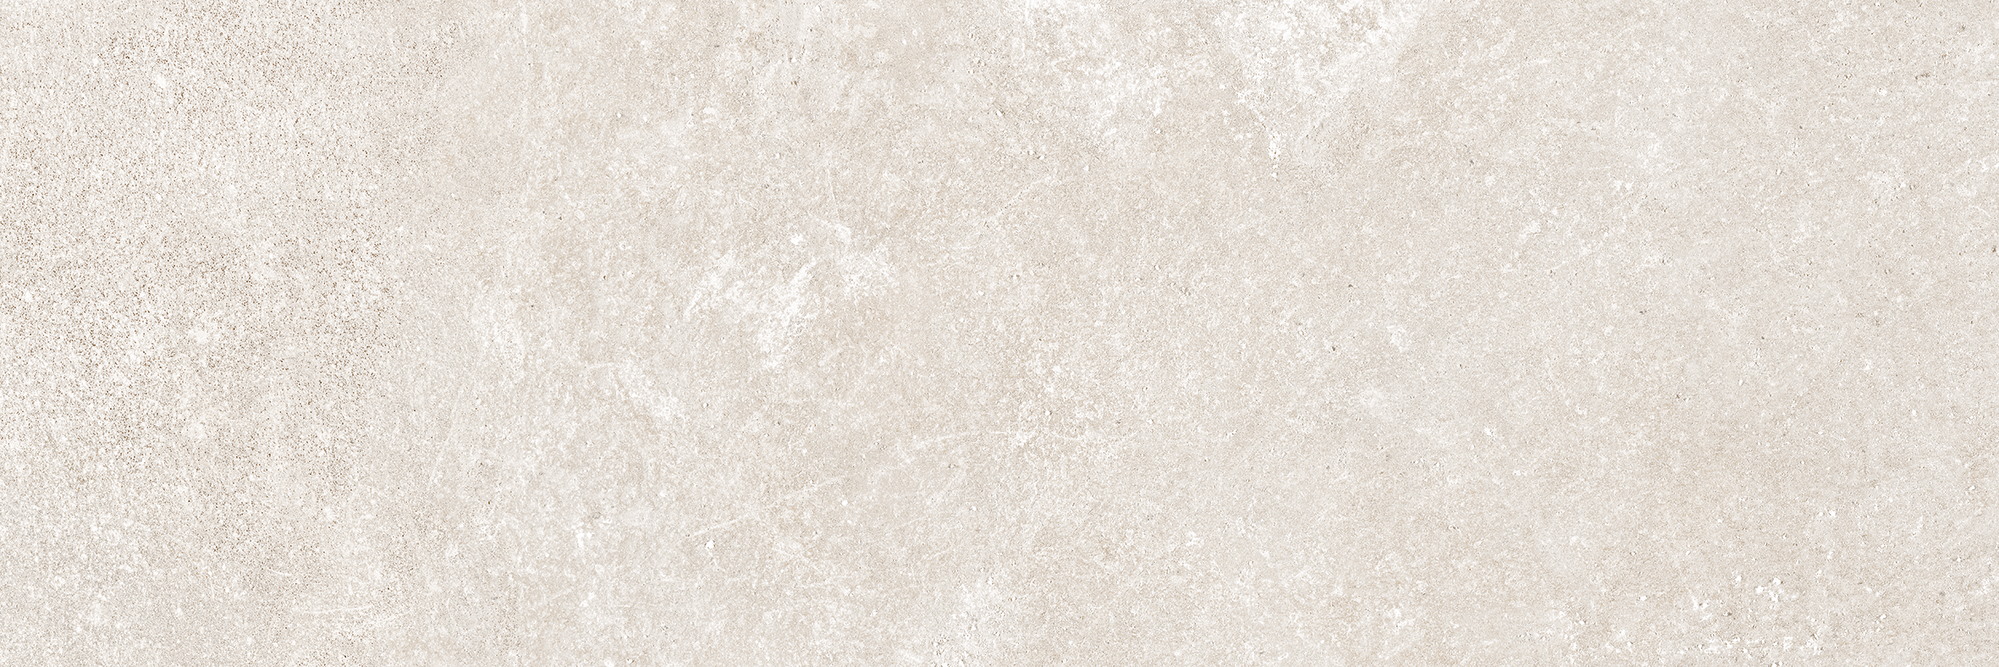 Керамическая плитка Peronda Grunge Beige/25X75 27158, Испания, прямоугольник, 250x750, фото в высоком разрешении